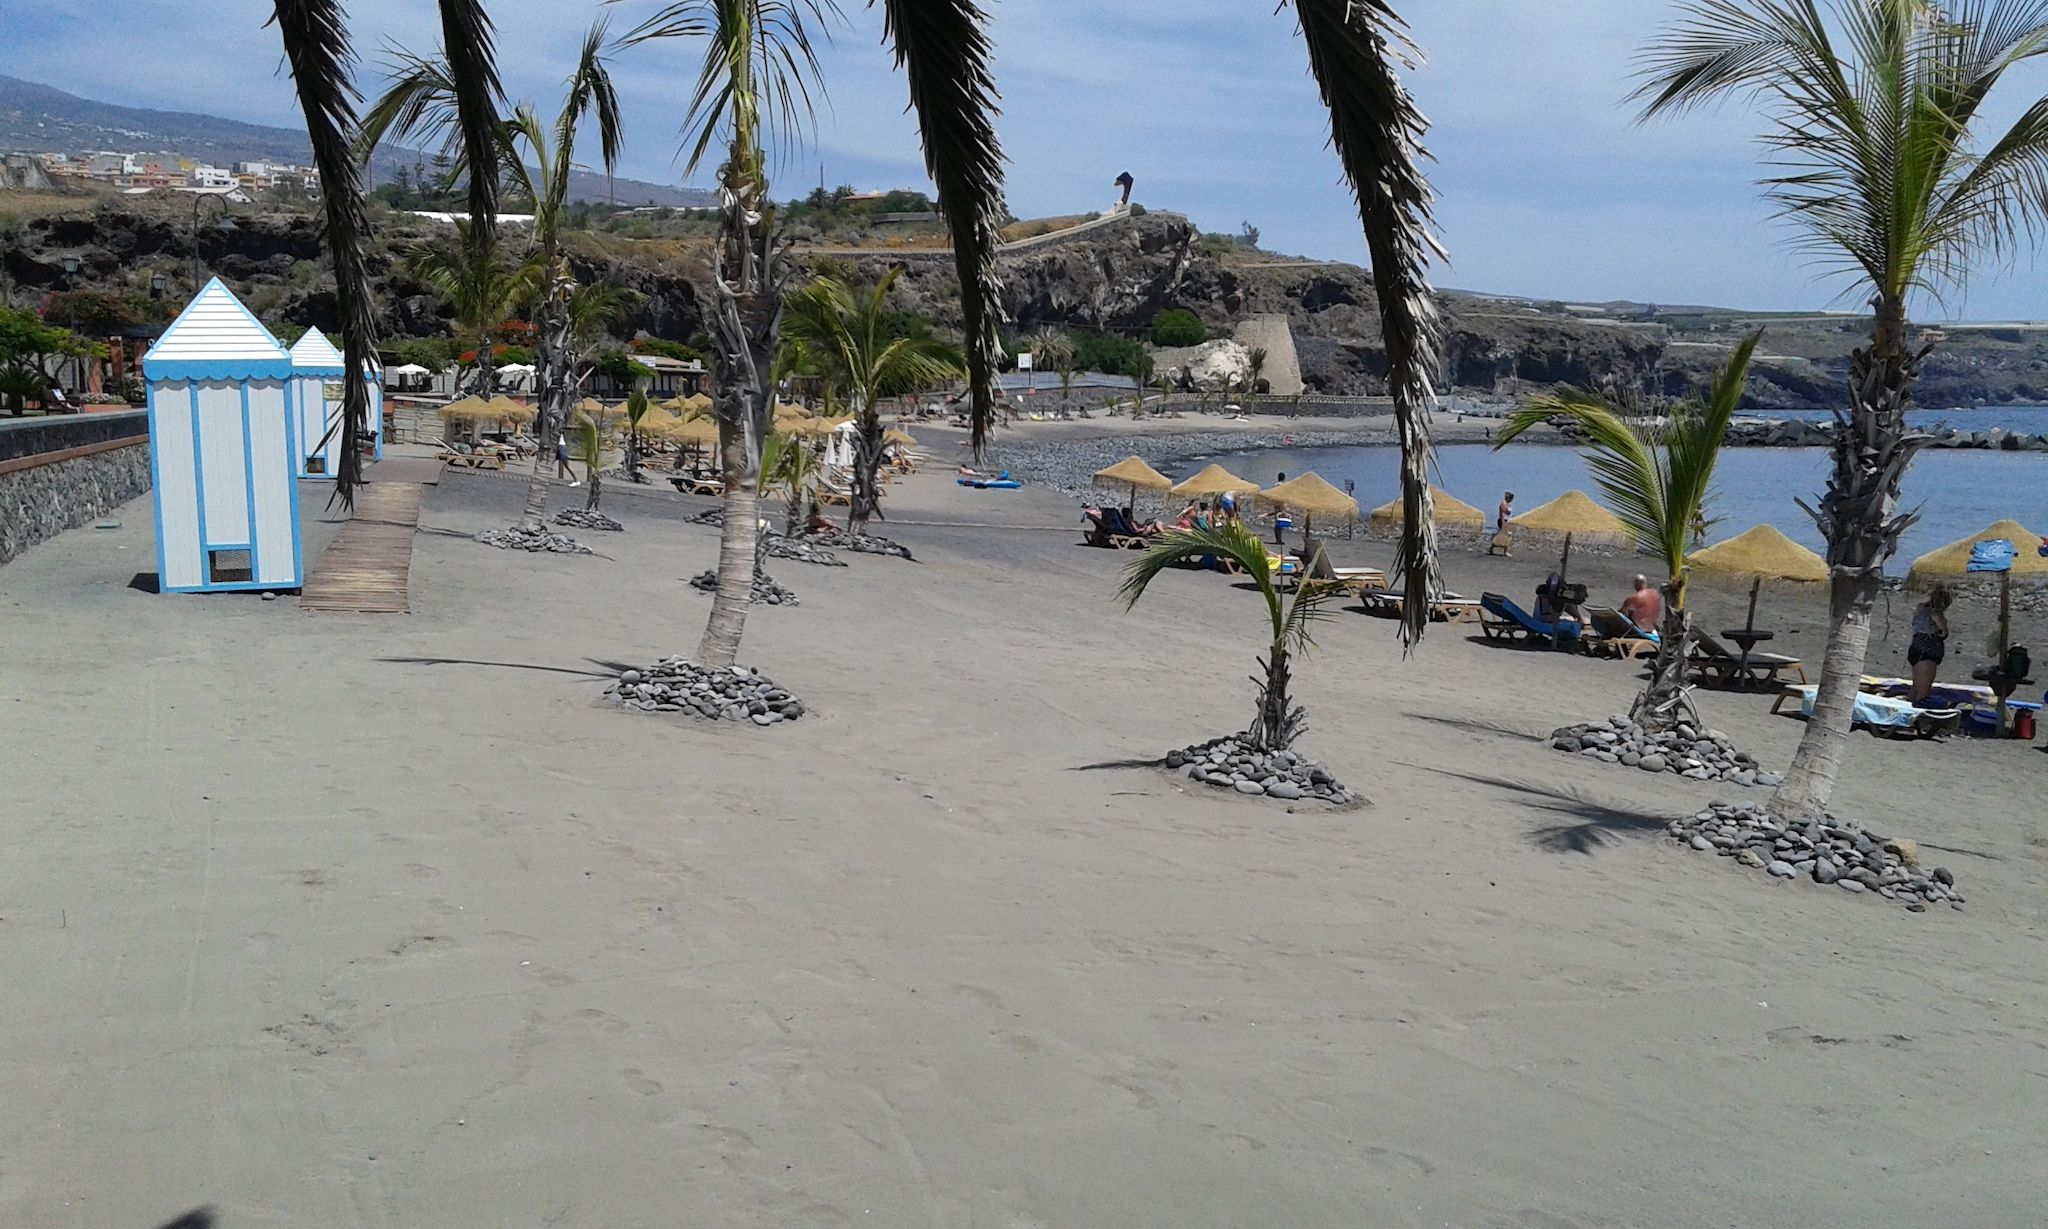 Het strand van Playa San Juan - volgens Tenerife reisgids auteur C. Jörg Metzner een echte insider tip op het eiland. Foto: C. Jörg Metzner